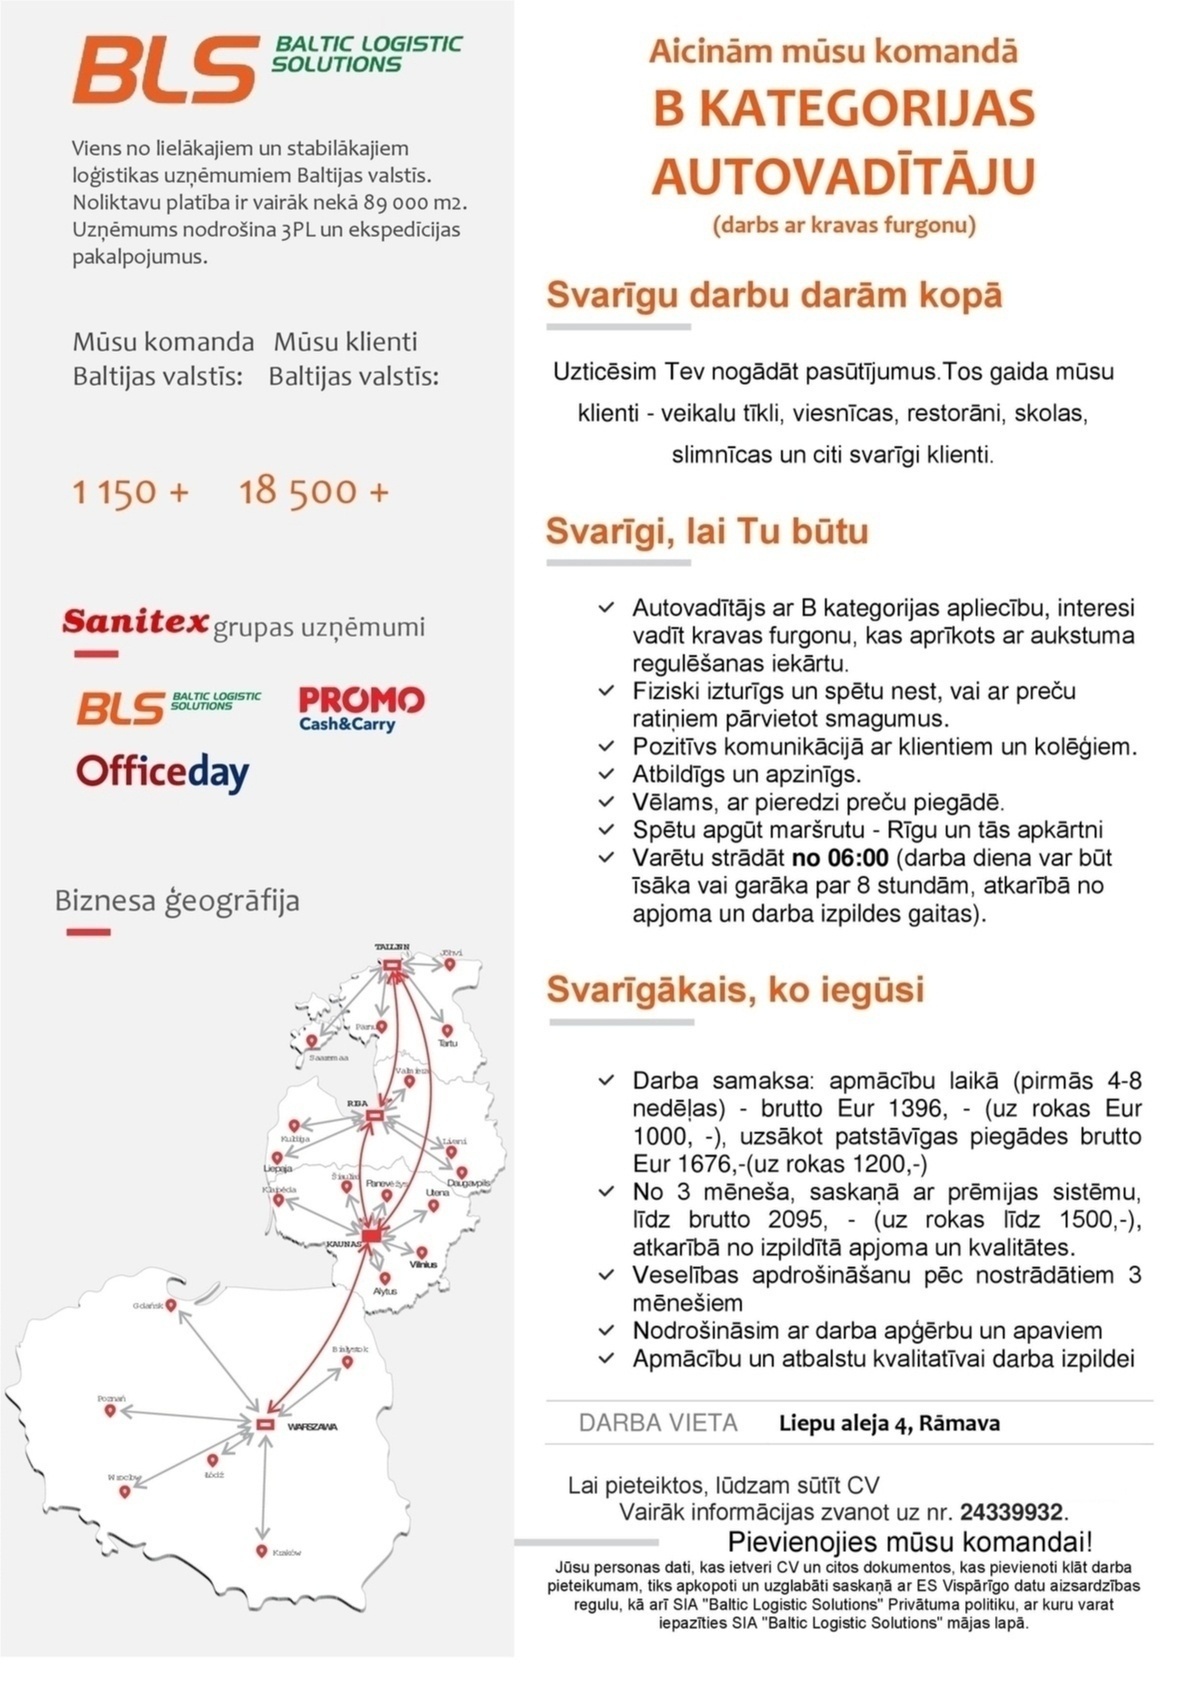 Baltic Logistic Solutions Autovadītājs/-a Rīgā ar B kategoriju (darbs ar kravas furgonu)